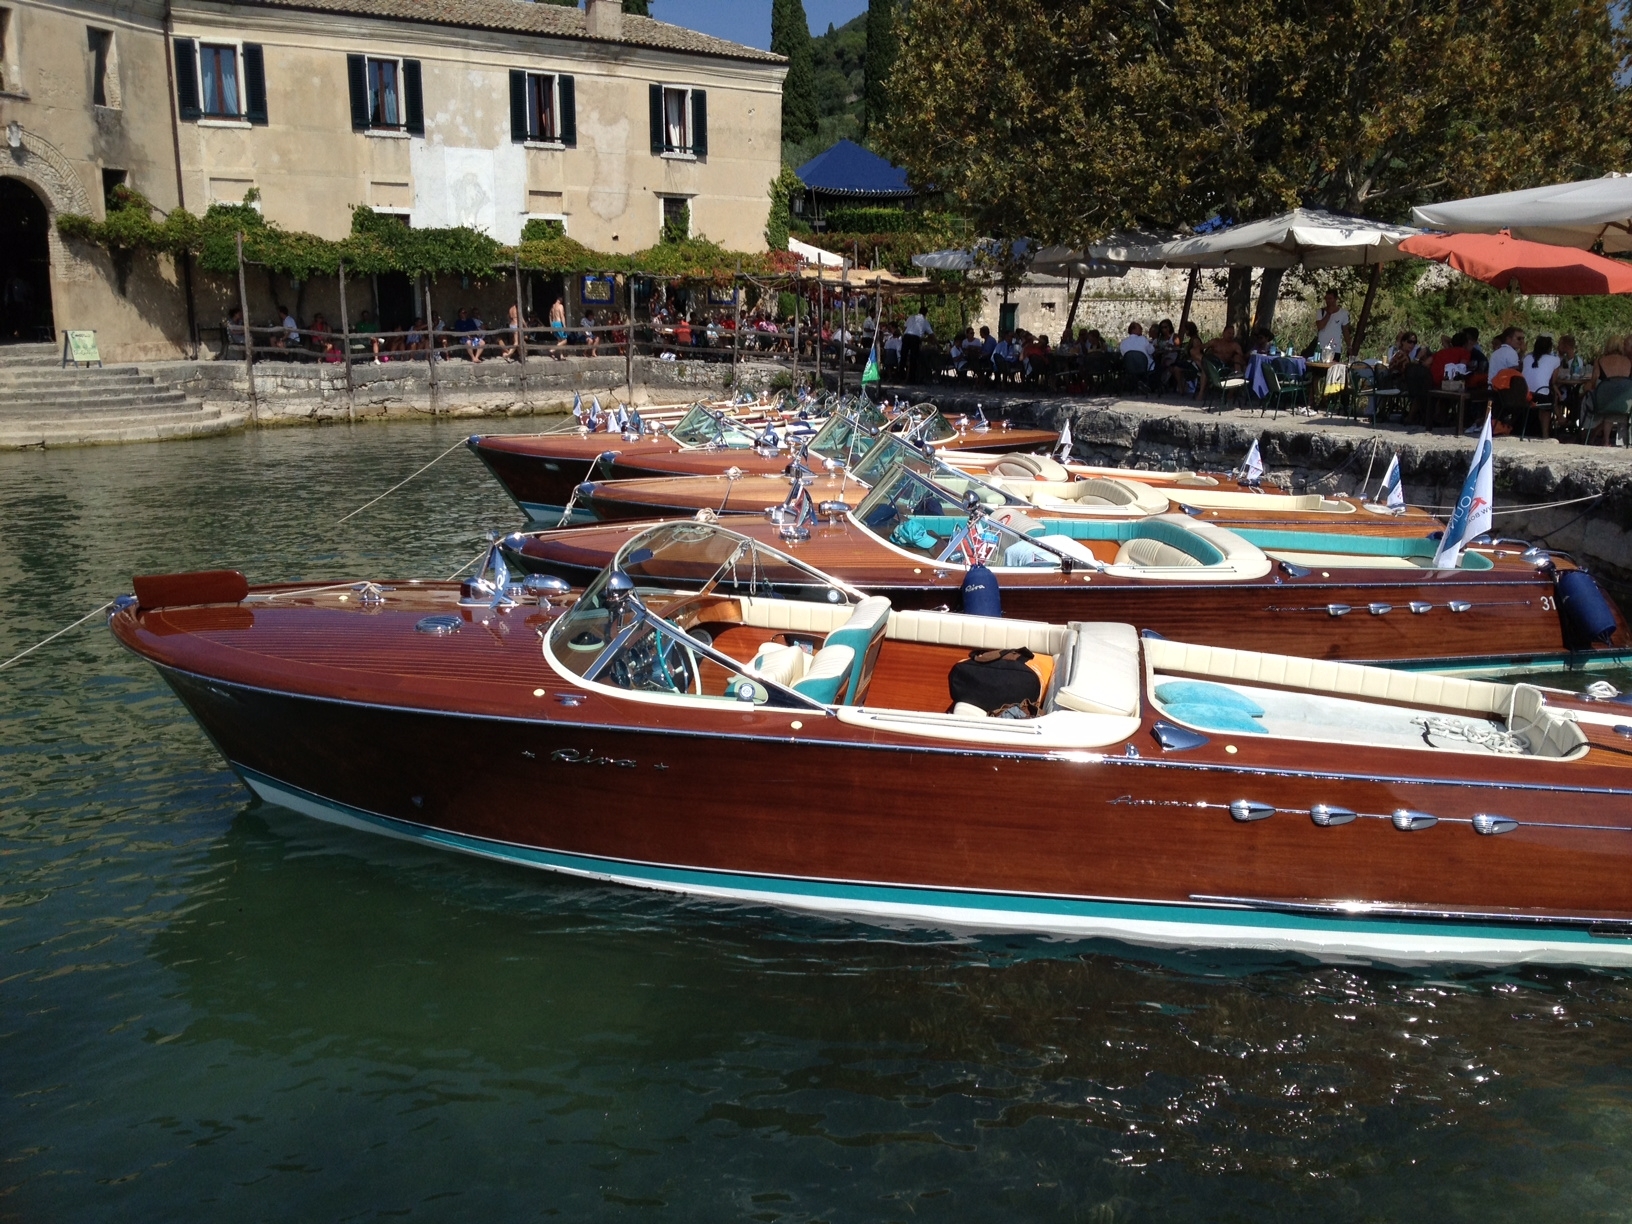 Motor Yacht Riva Aquarama - Salo - Lake Garda - Italy ...